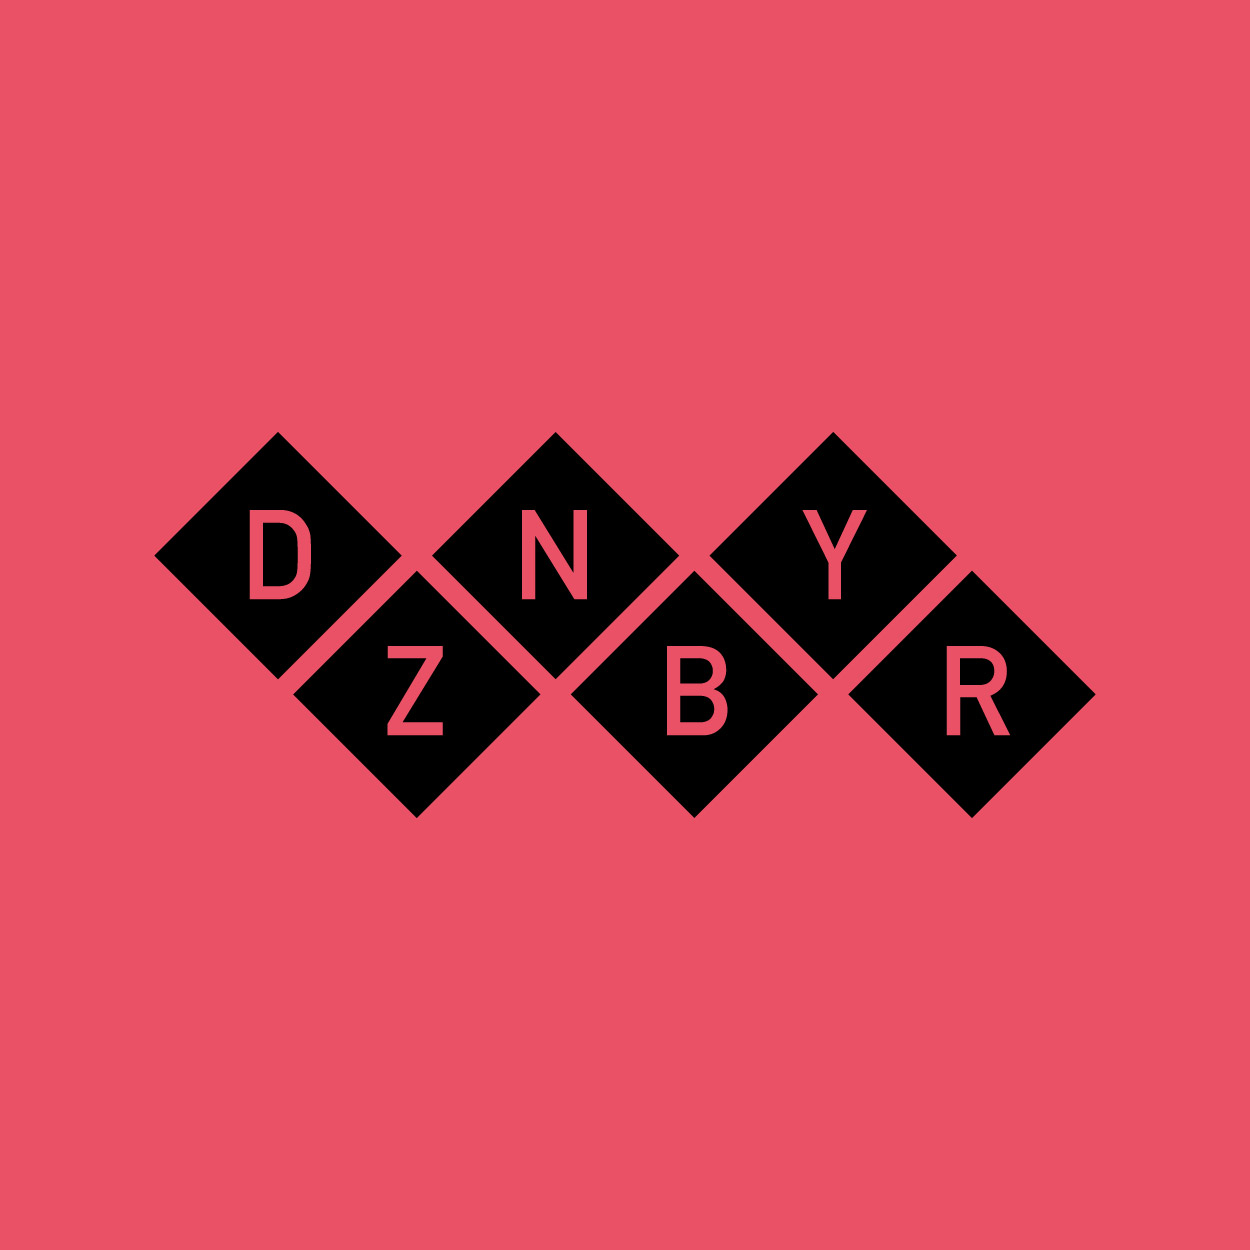 Danny Zober: Logo invertiert auf rotem Grund